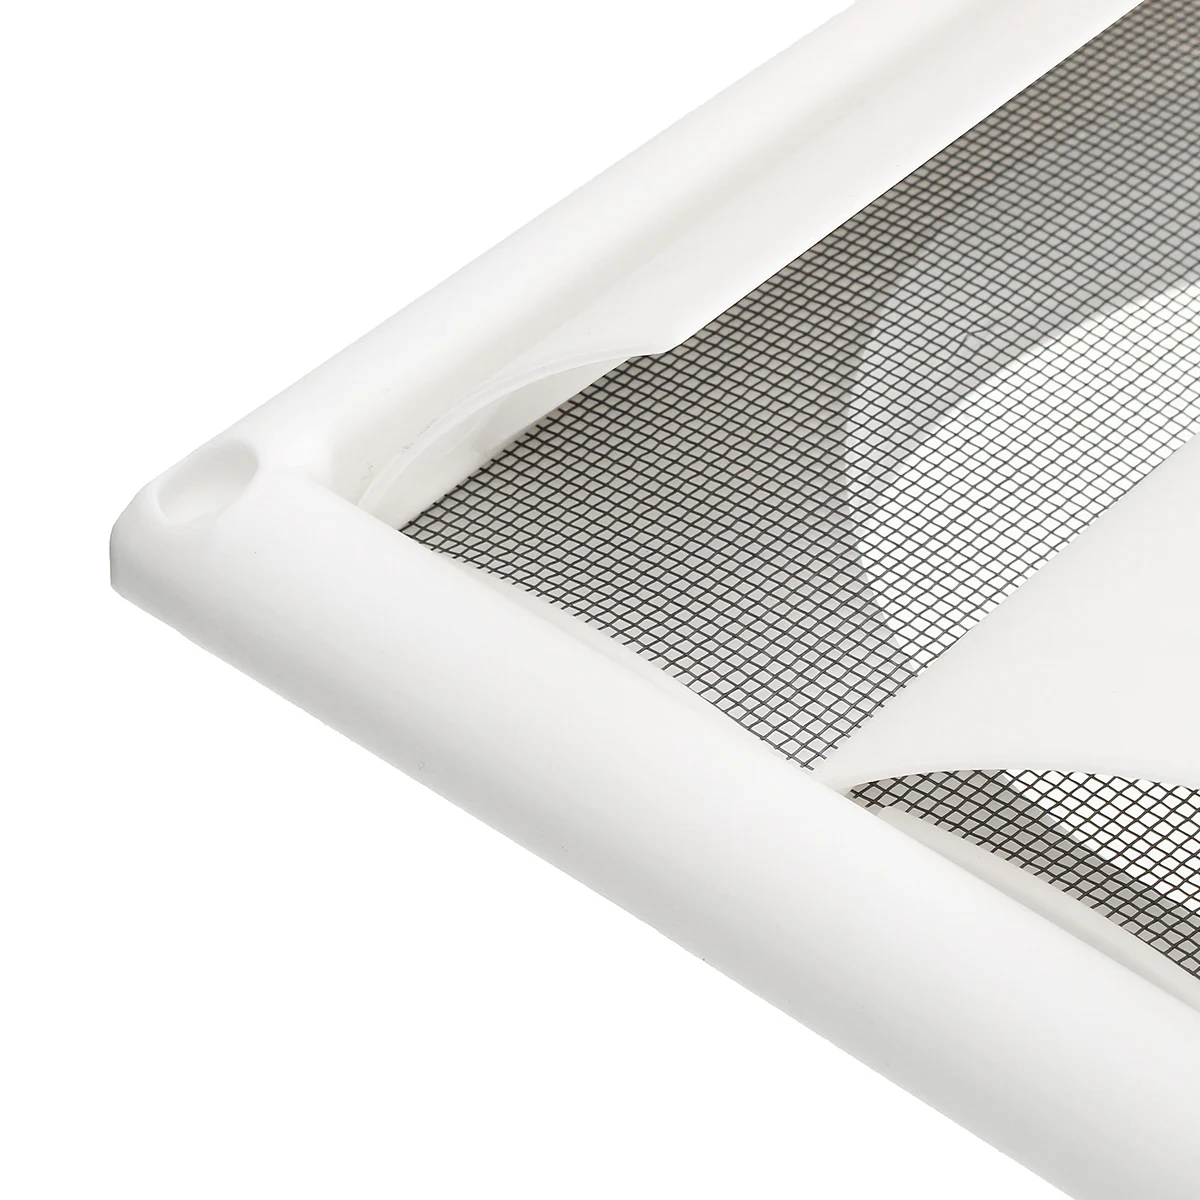 MTGATHER вентиляционная решетка вентиляционная крышка пластиковая белая стена решетки воздуховод 200x200x40 мм Отопление охлаждения и вентиляционные отверстия